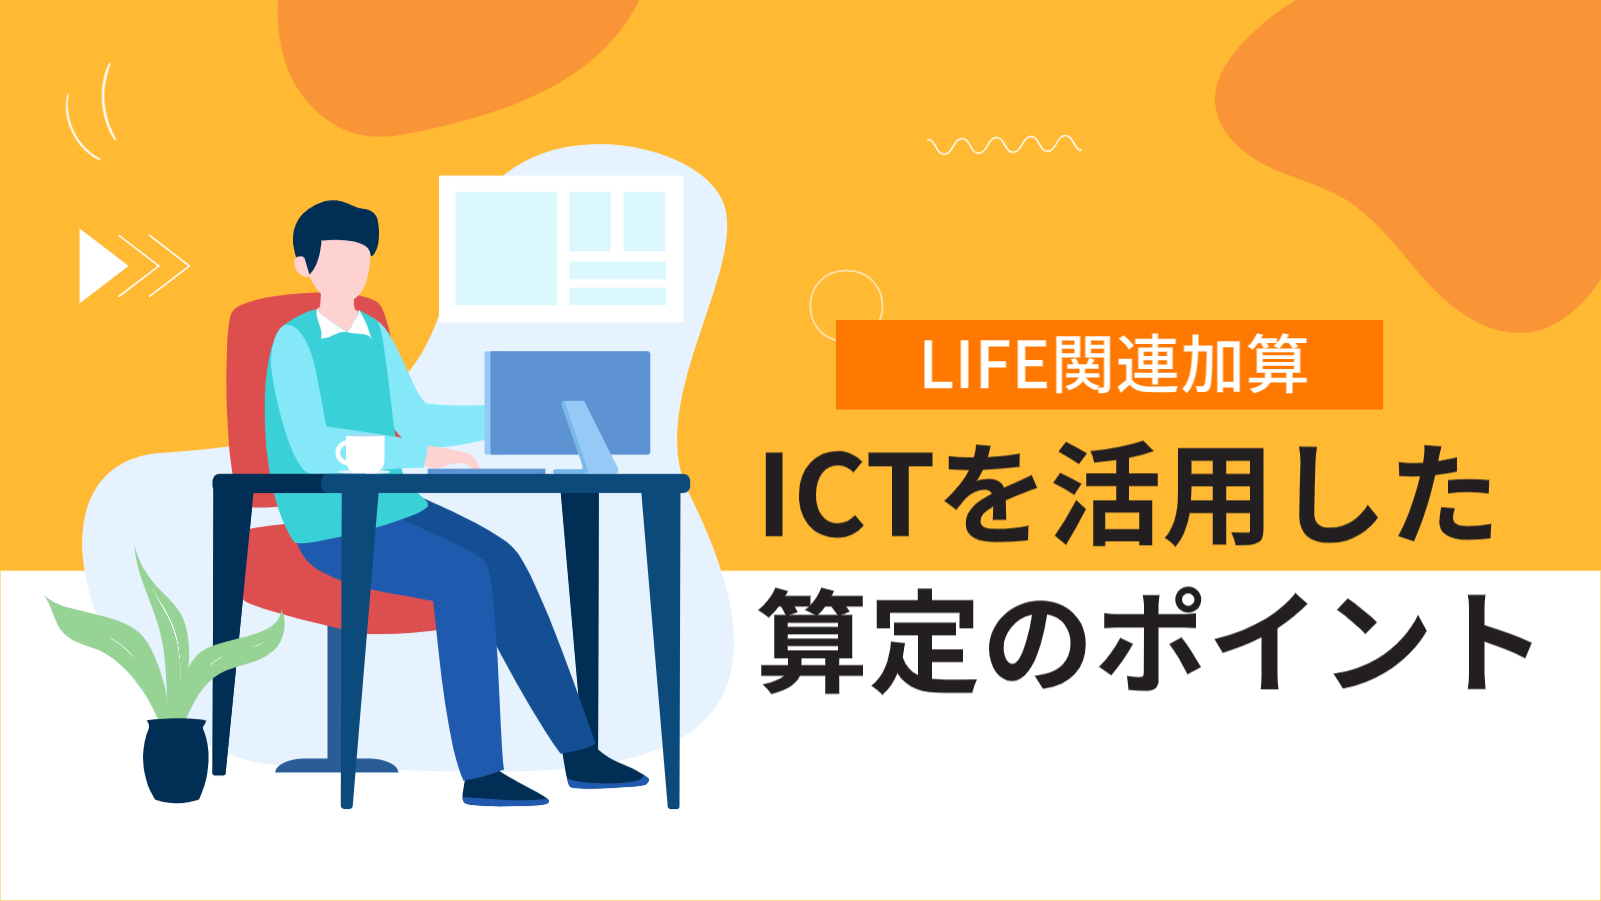 【LIFE関連加算】ICTを活用した算定のポイント